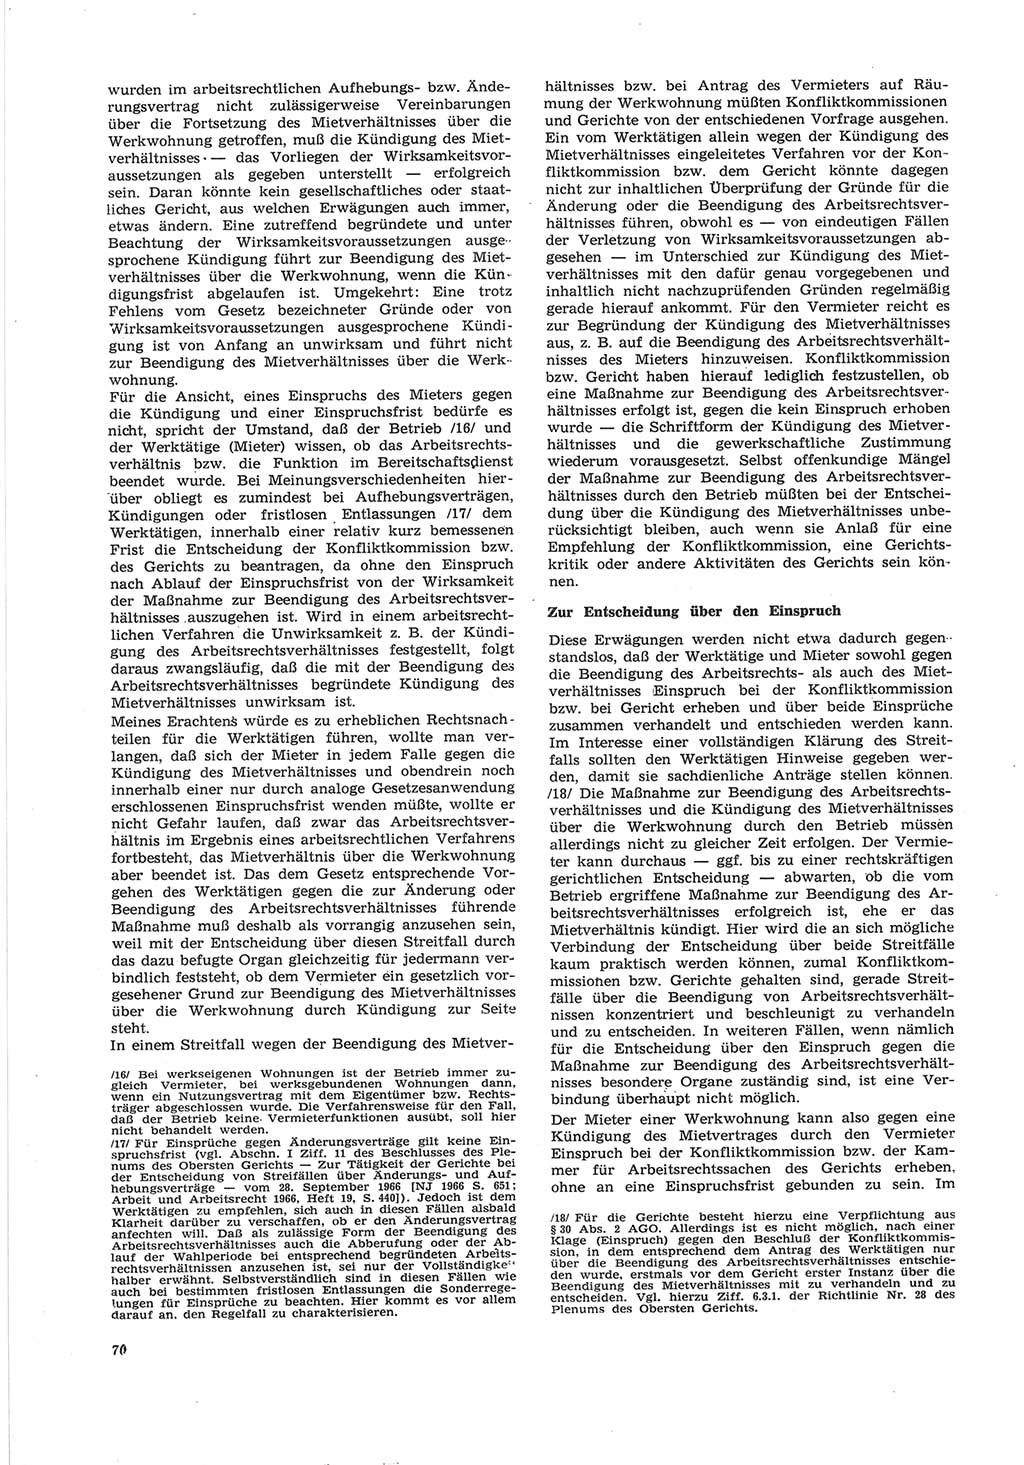 Neue Justiz (NJ), Zeitschrift für Recht und Rechtswissenschaft [Deutsche Demokratische Republik (DDR)], 25. Jahrgang 1971, Seite 70 (NJ DDR 1971, S. 70)